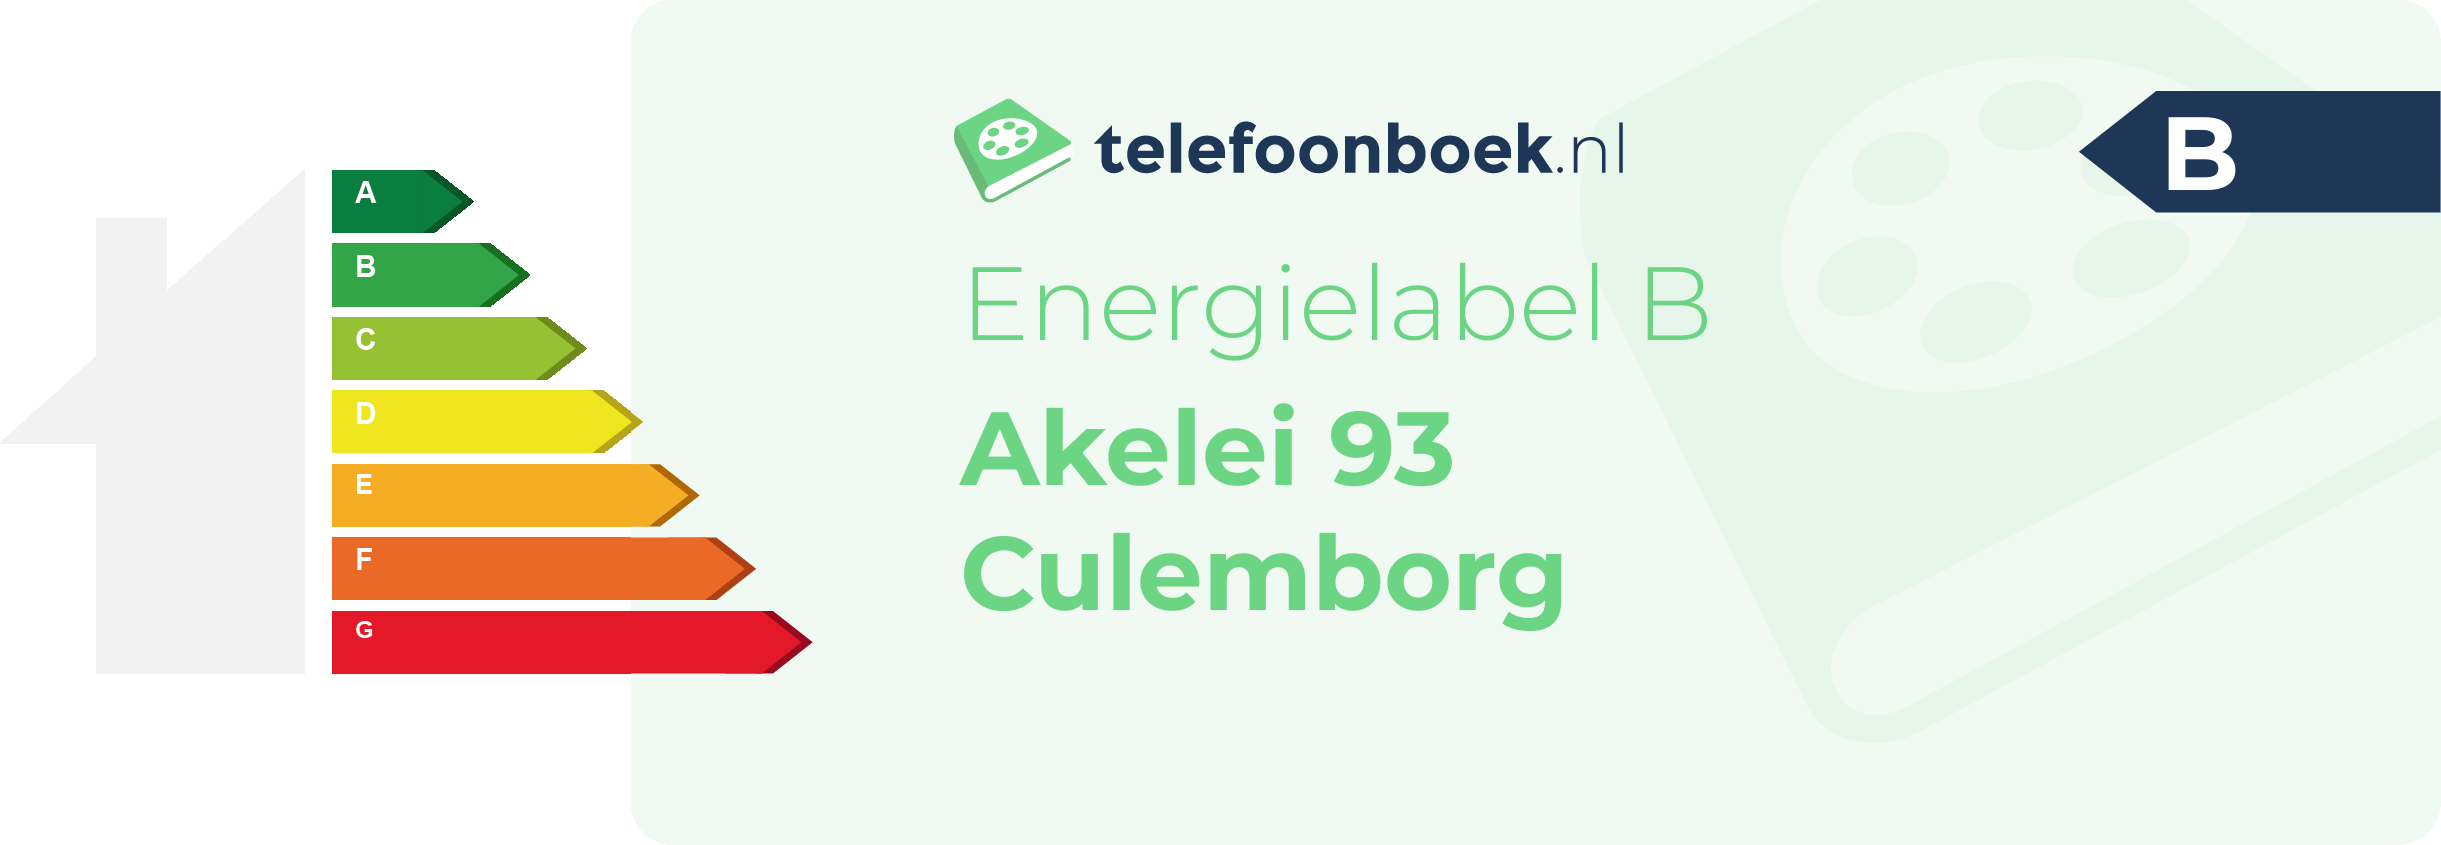 Energielabel Akelei 93 Culemborg